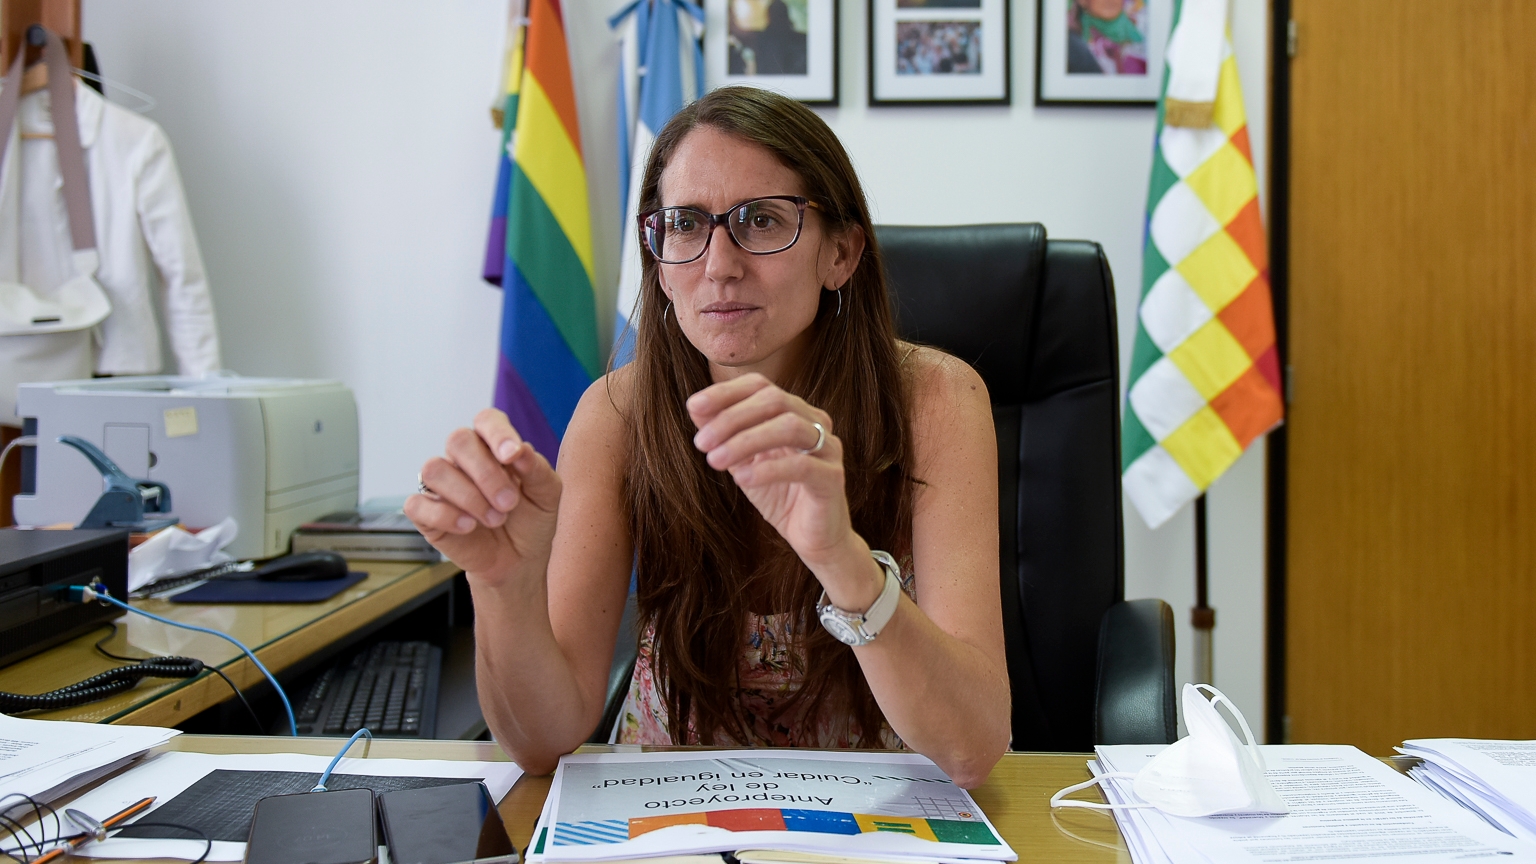 La abogada de derechos humanos, Elizabeth Gómez Alcorta, presentó su renuncia "indeclinable" al frente del ministerio de Mujeres, Géneros y Diversidad